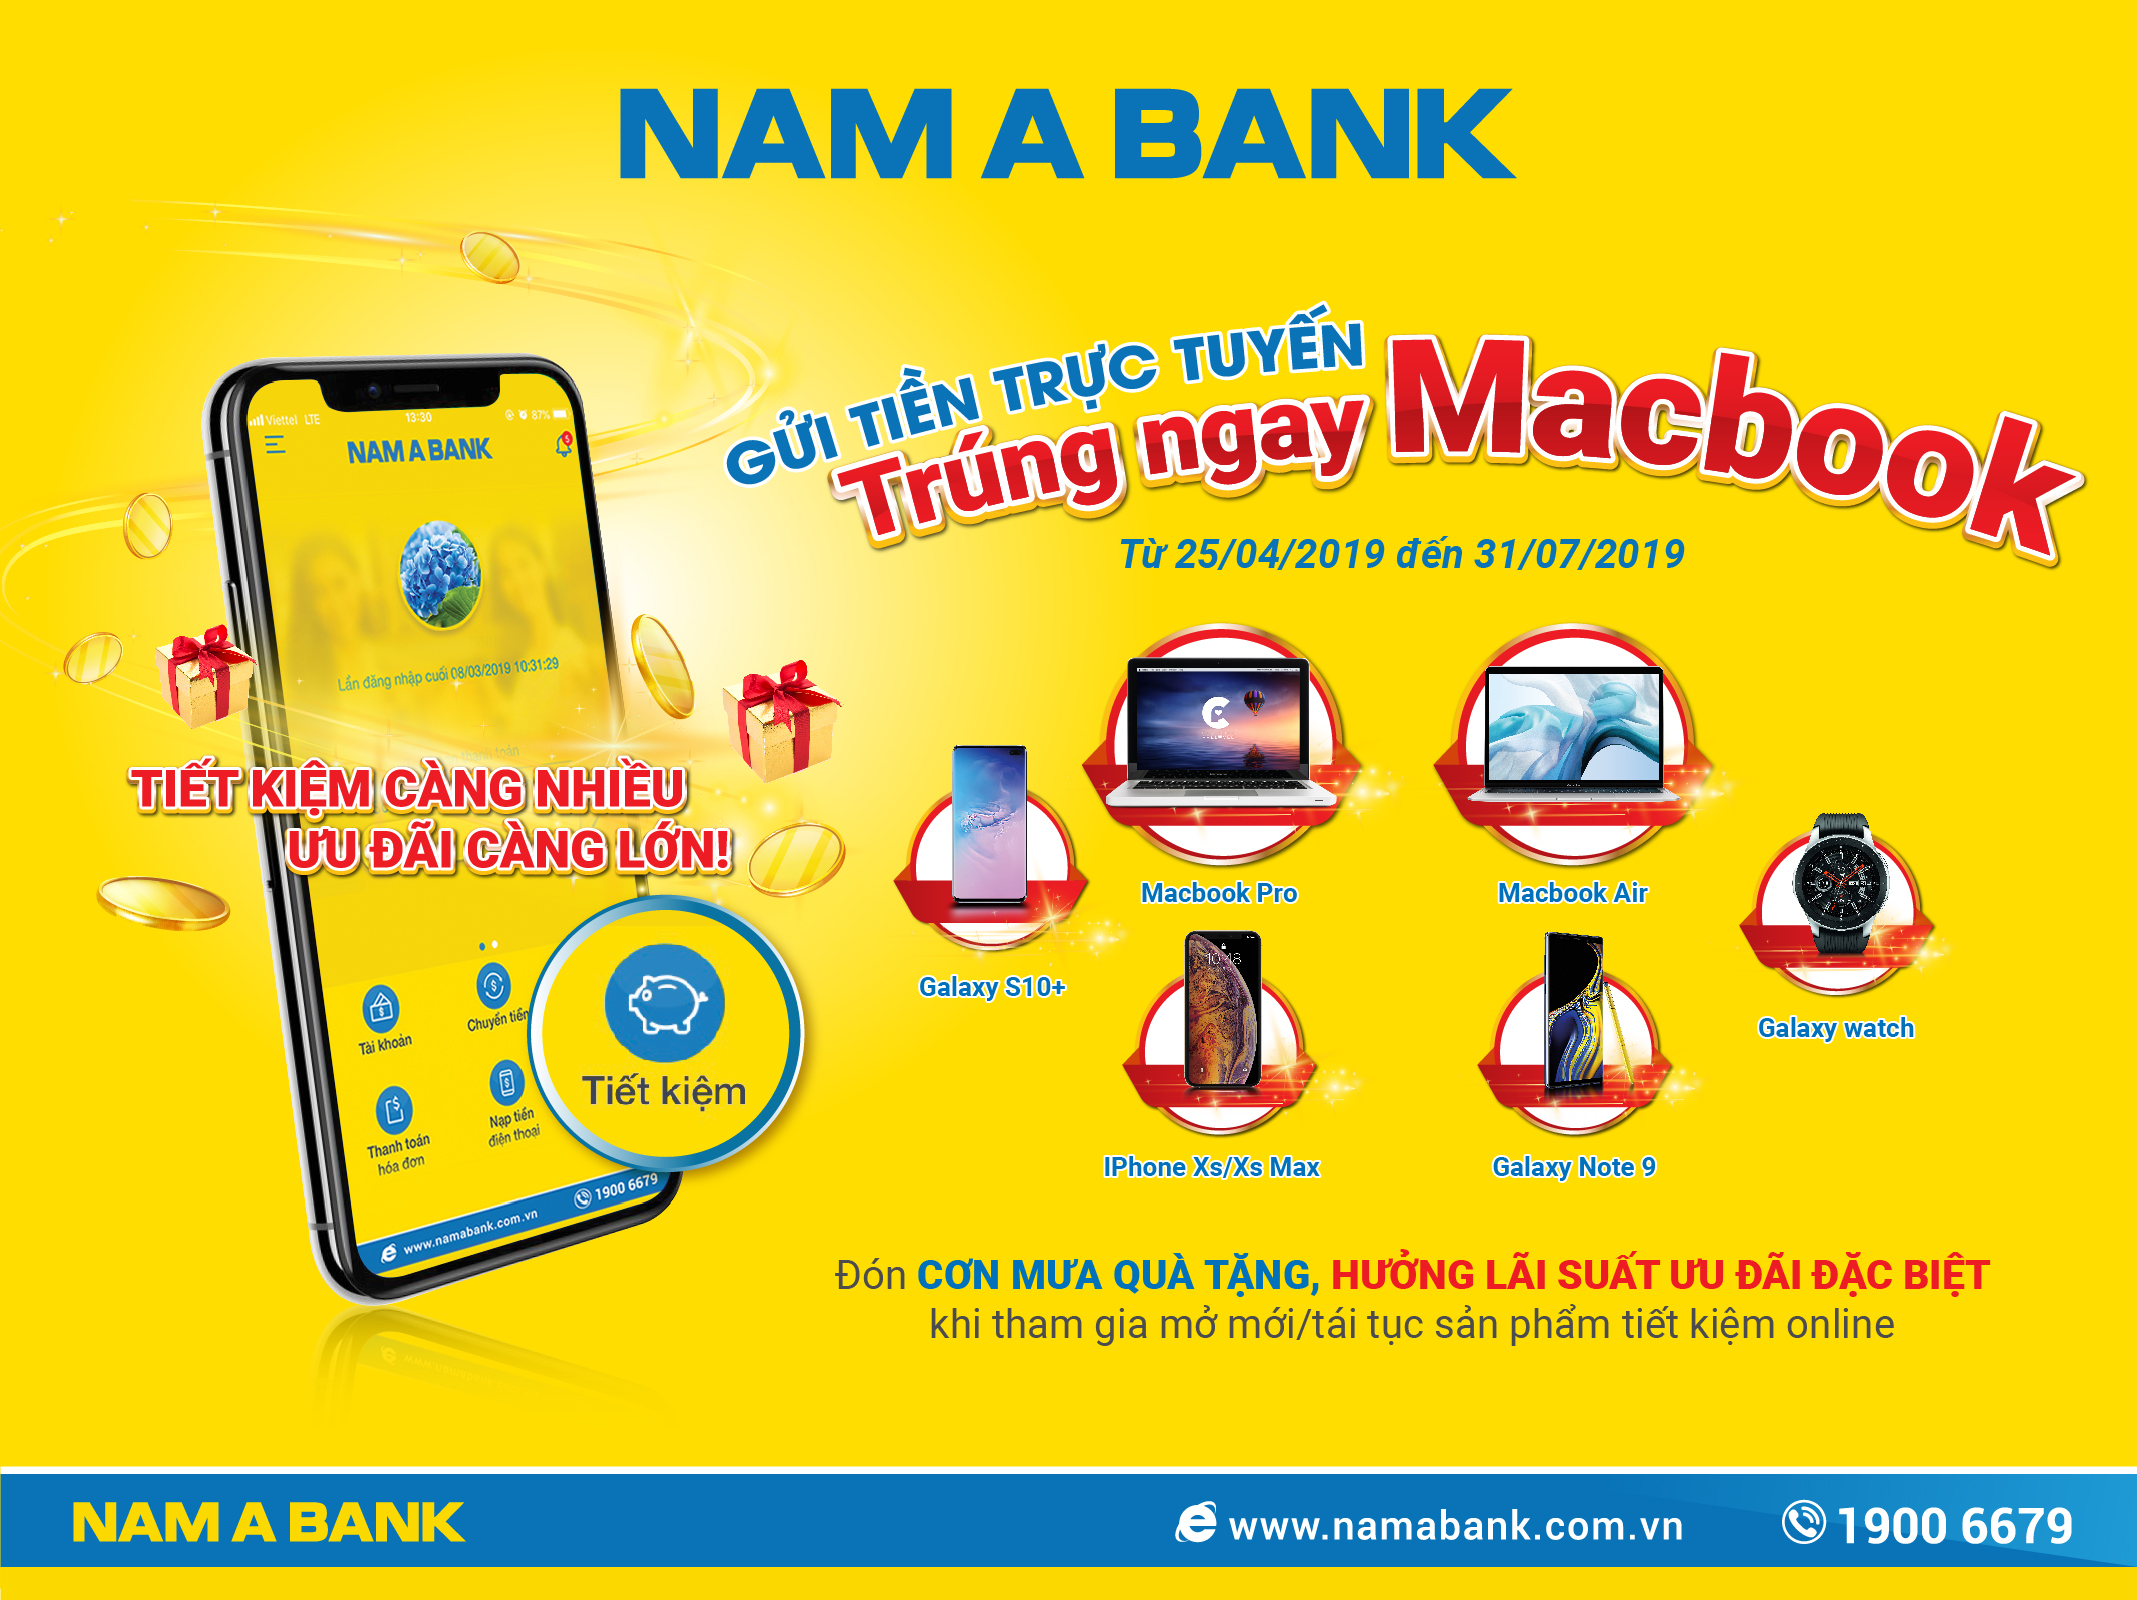 Nam A Bank trao thưởng “khủng” cho khách hàng